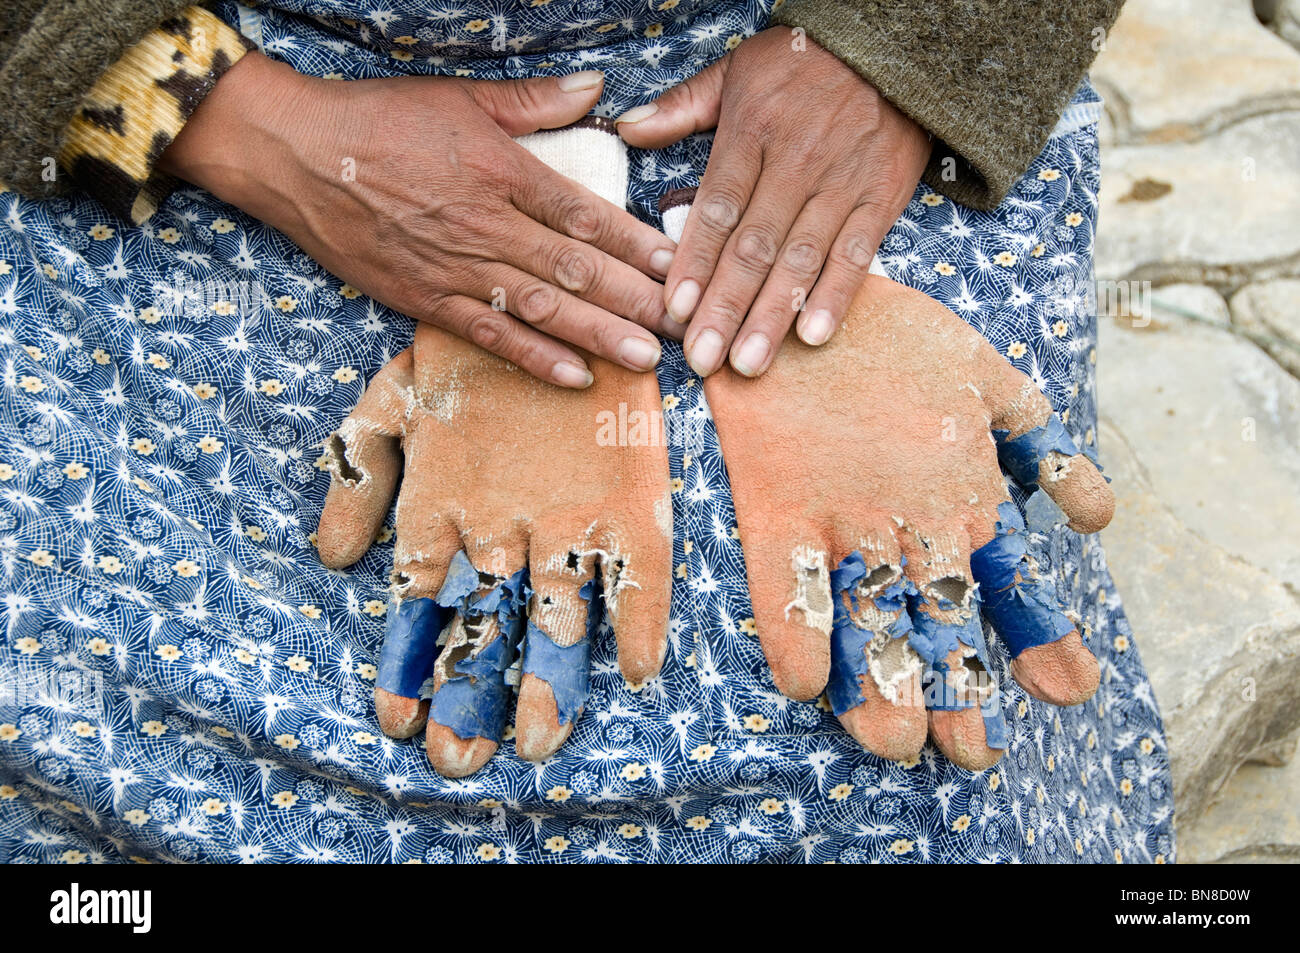 El Alto. La donna costruttore di strada mostra la usurata guanti che indossa come scarsa protezione per lavori pesanti Foto Stock